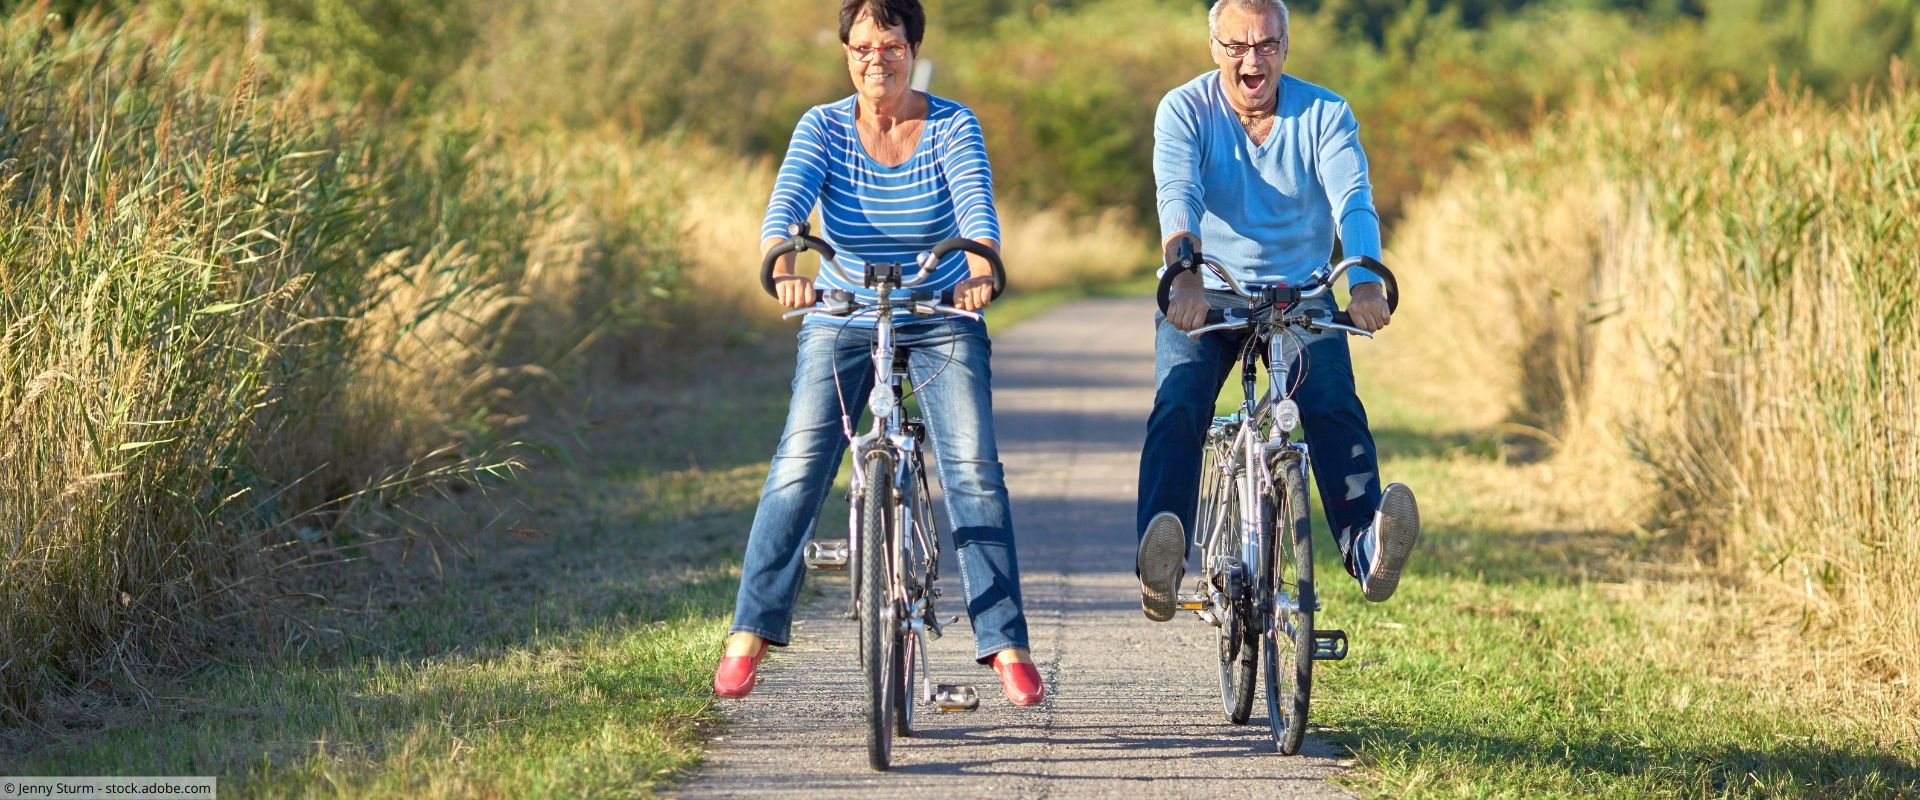 Eine ältere Frau und ein älterer Mann fahren Fahrrad auf einem Feldweg